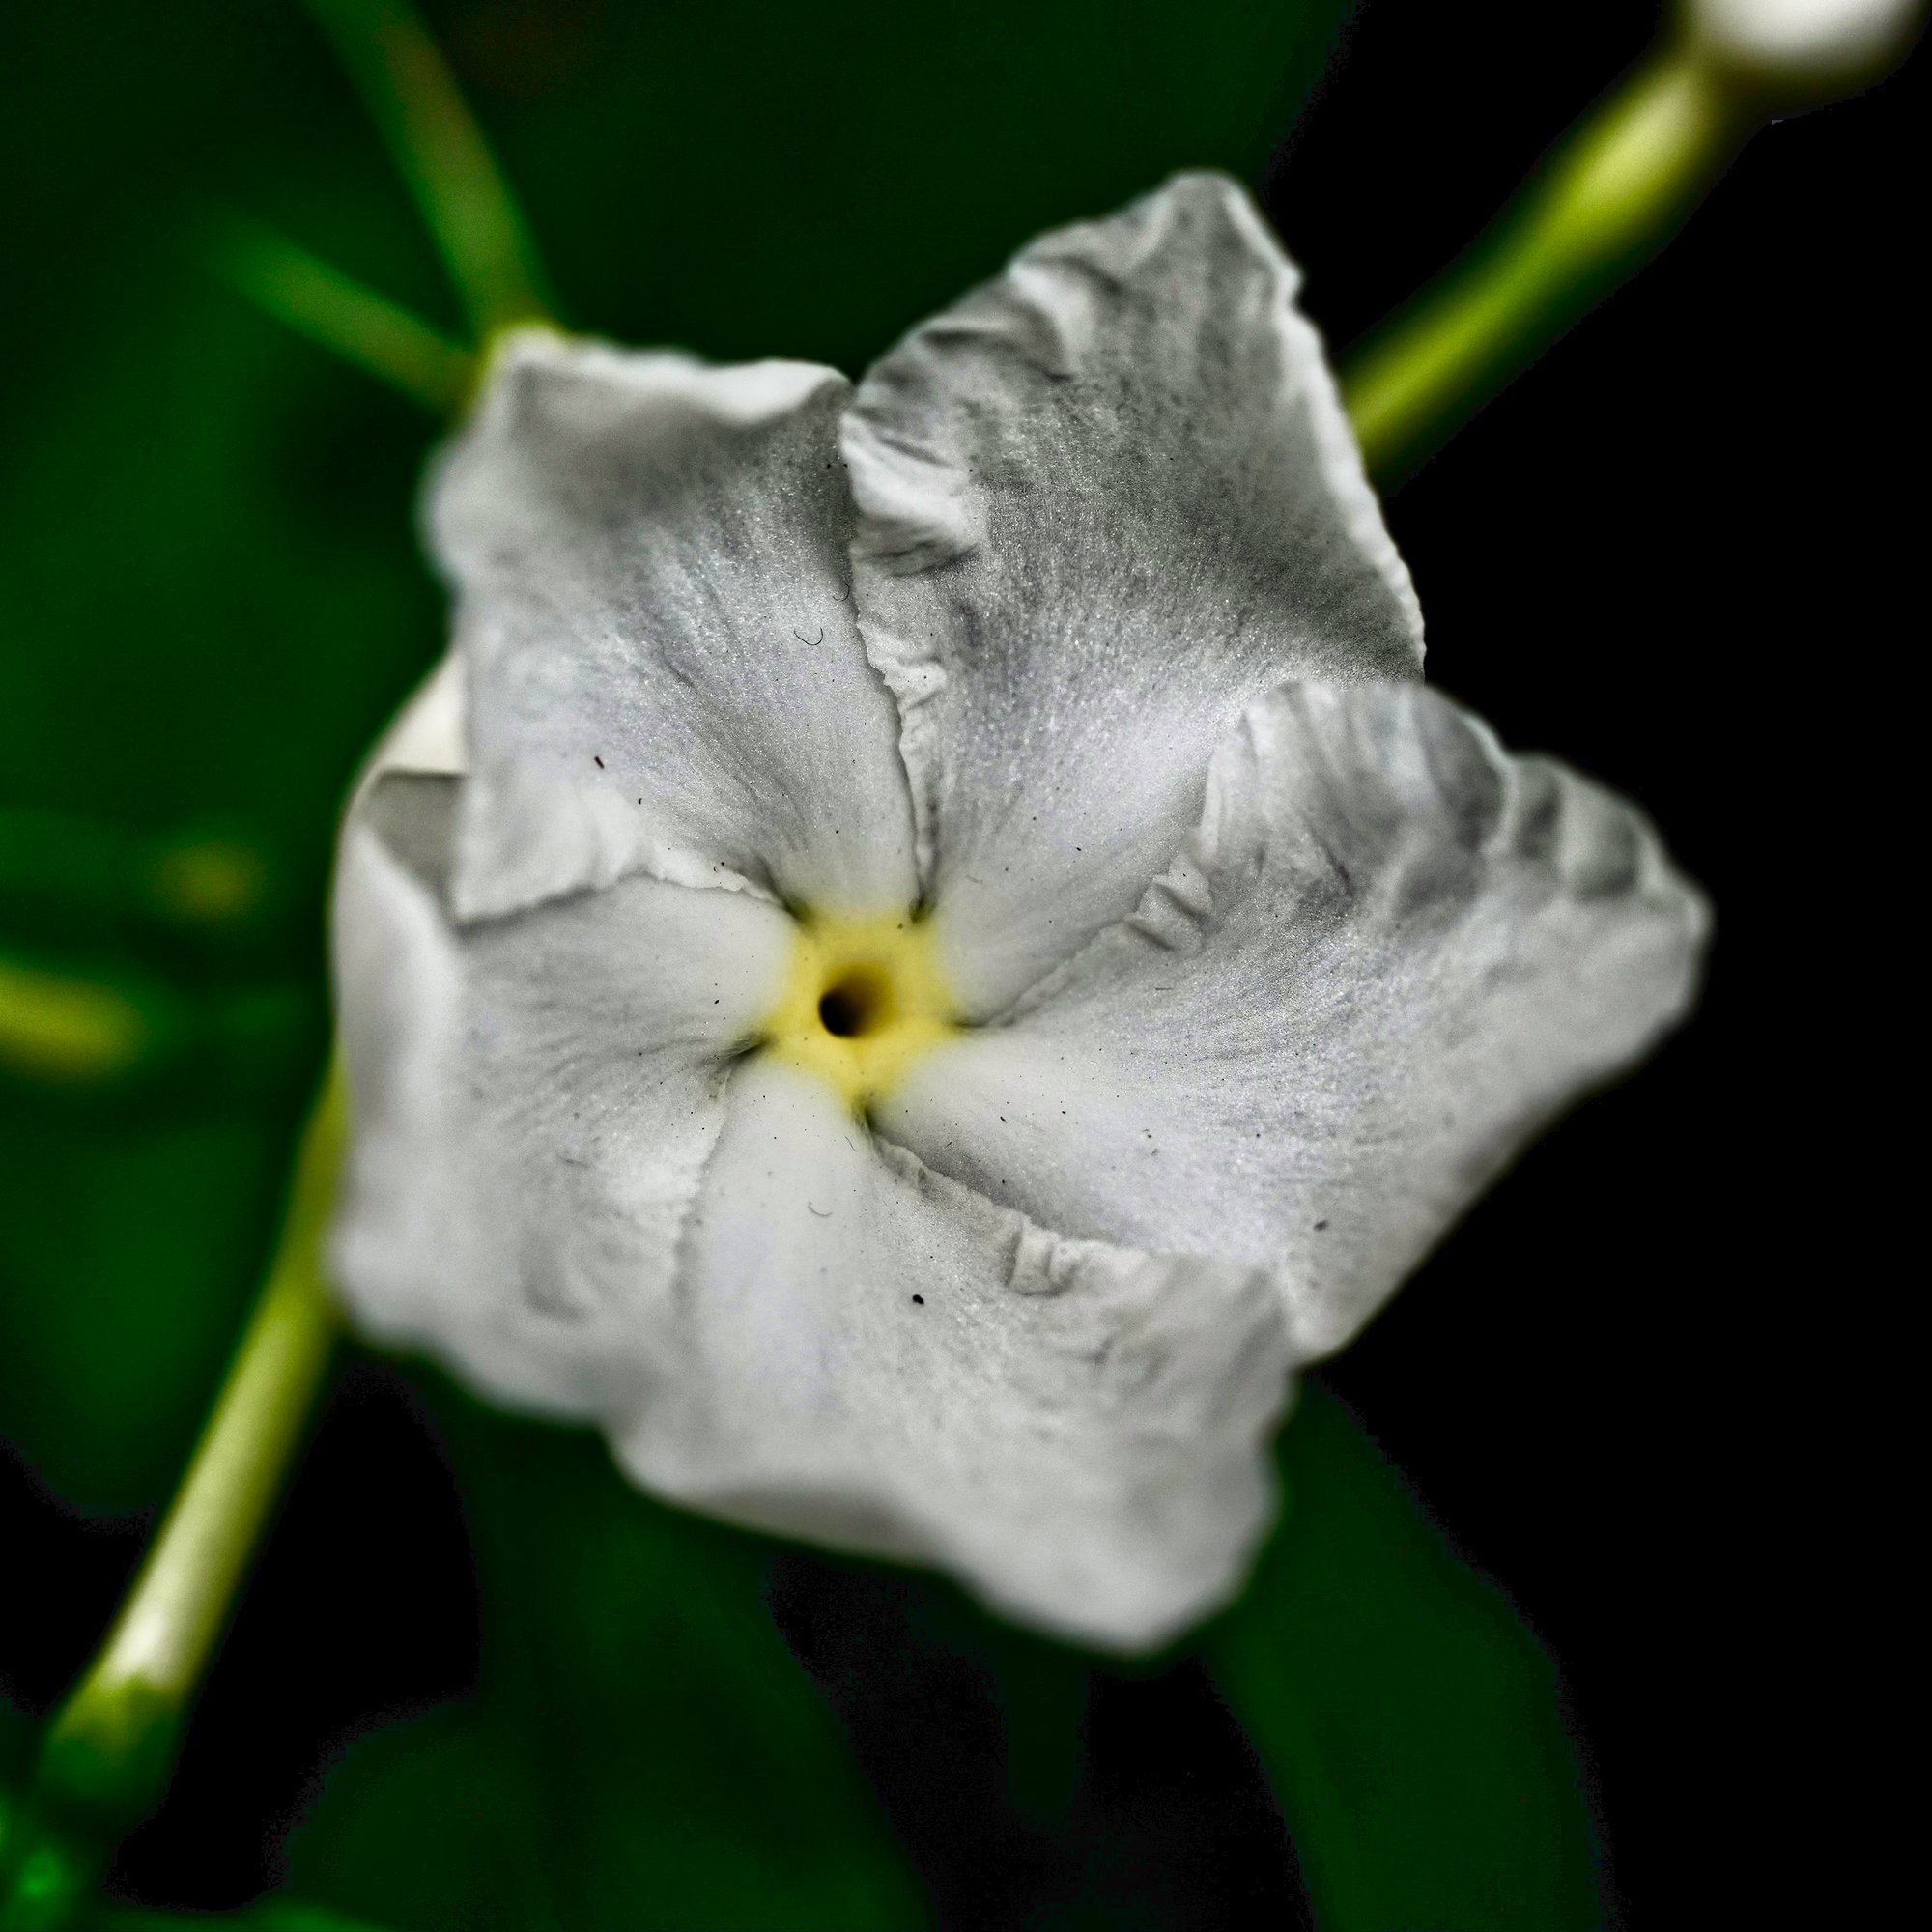 A macro shot of a flower